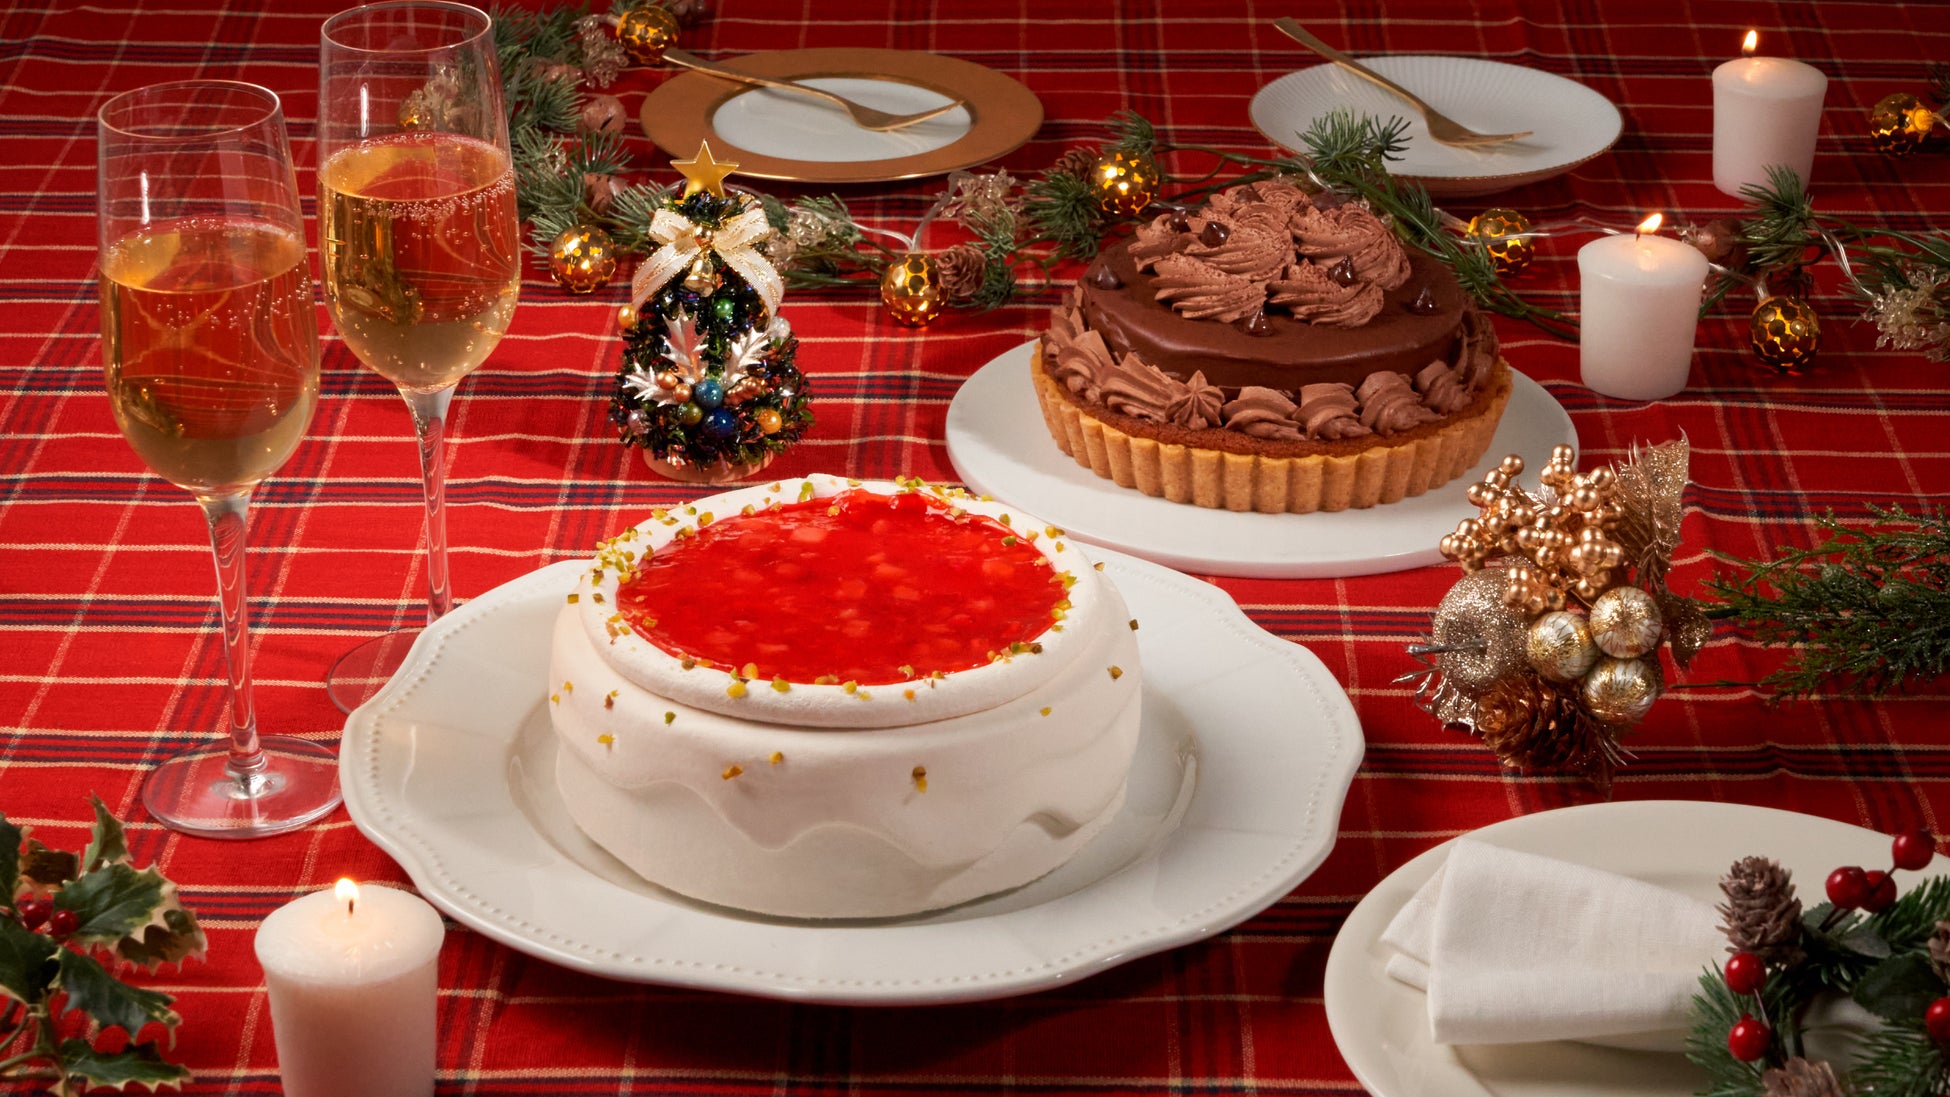 プラントベースフードブランド「2foods」から、動物性原材料を使わず、グルテンフリーも実現したこだわりのプラントベースクリスマスケーキ2種 10月18日より予約開始